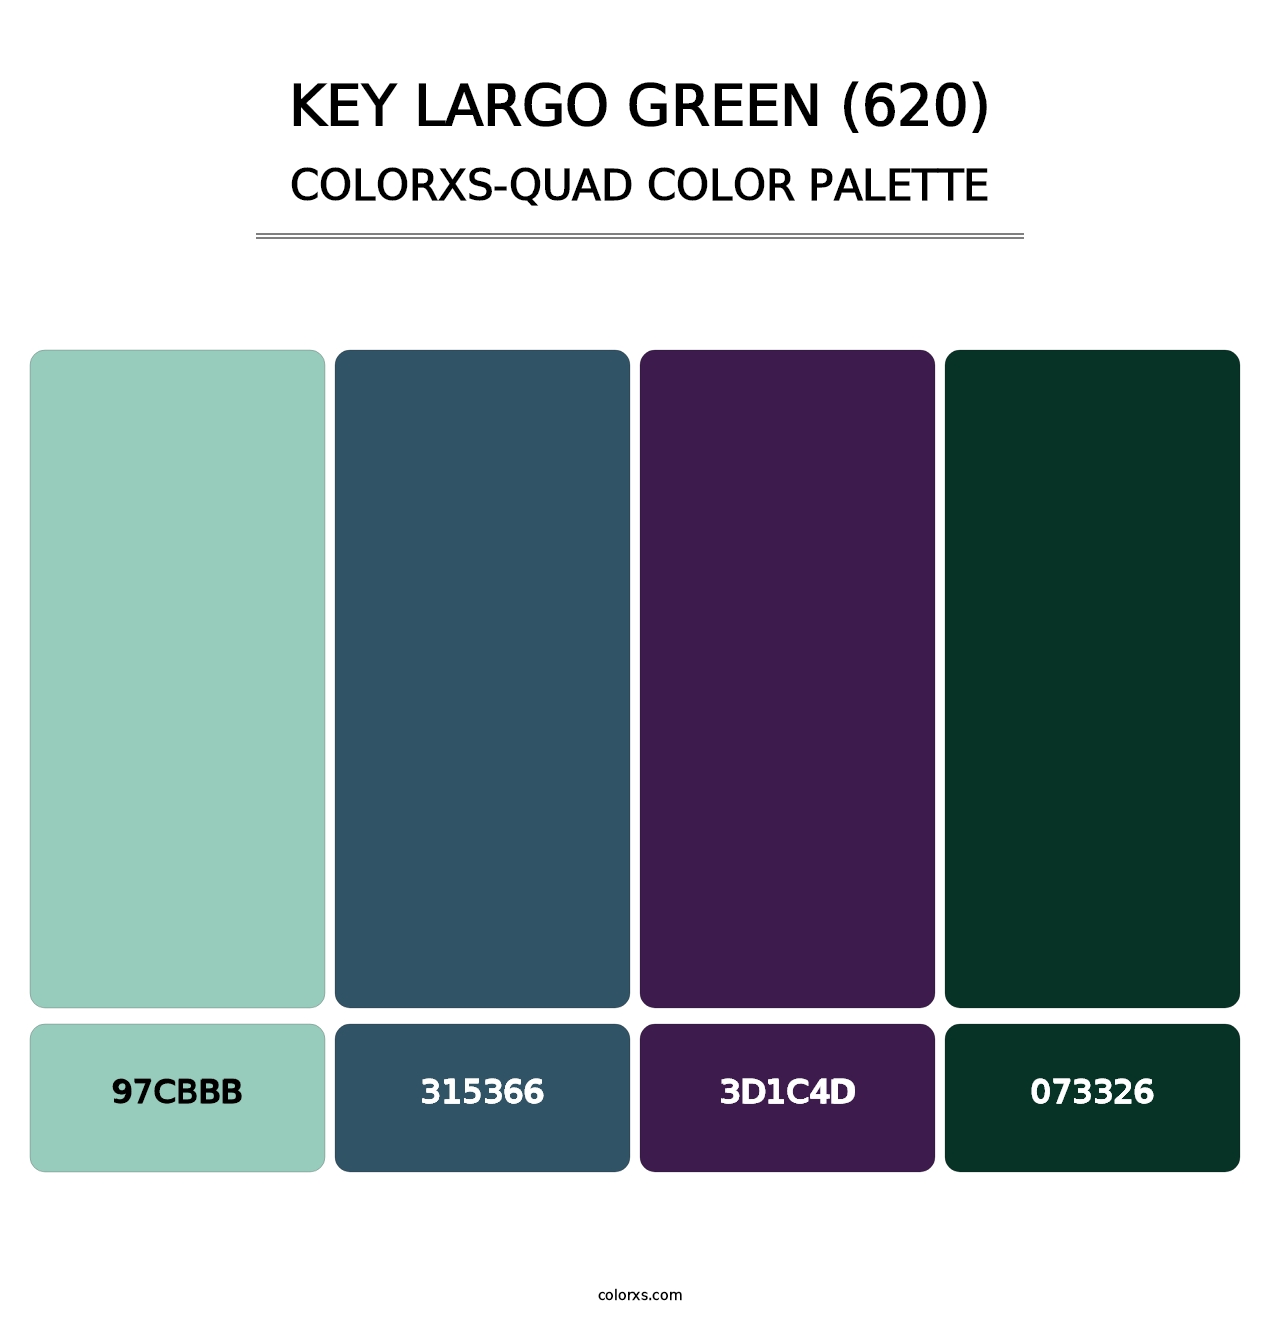 Key Largo Green (620) - Colorxs Quad Palette